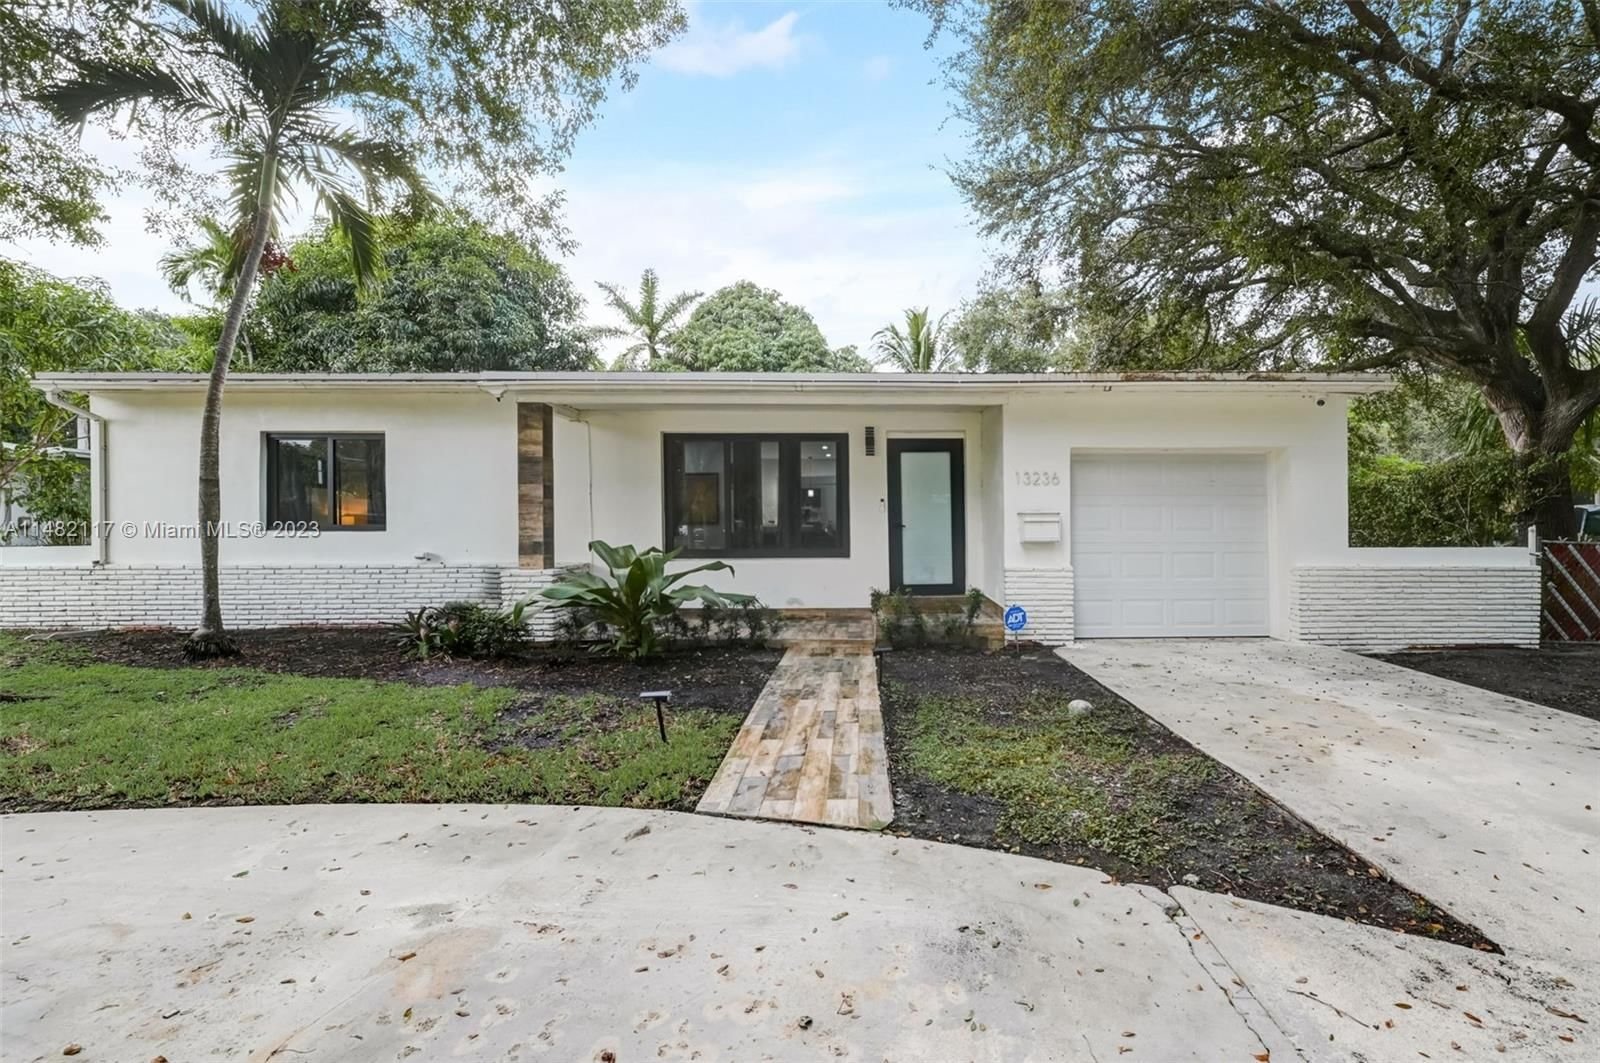 Real estate property located at 13236 4th Ave, Miami-Dade County, North Miami, North Miami, FL